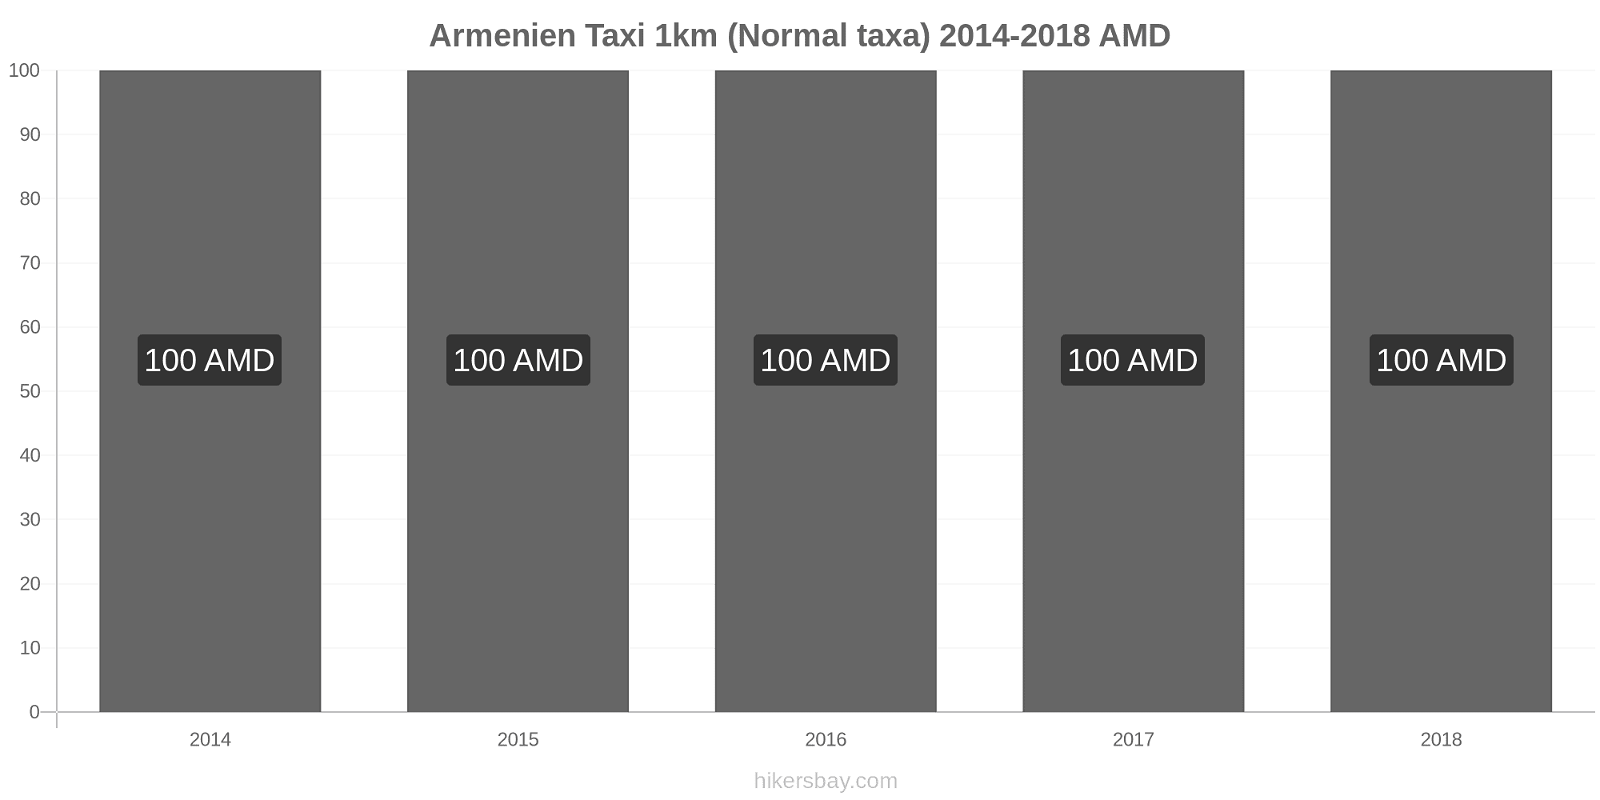 Armenien prisändringar Taxi 1km (Normal taxa) hikersbay.com